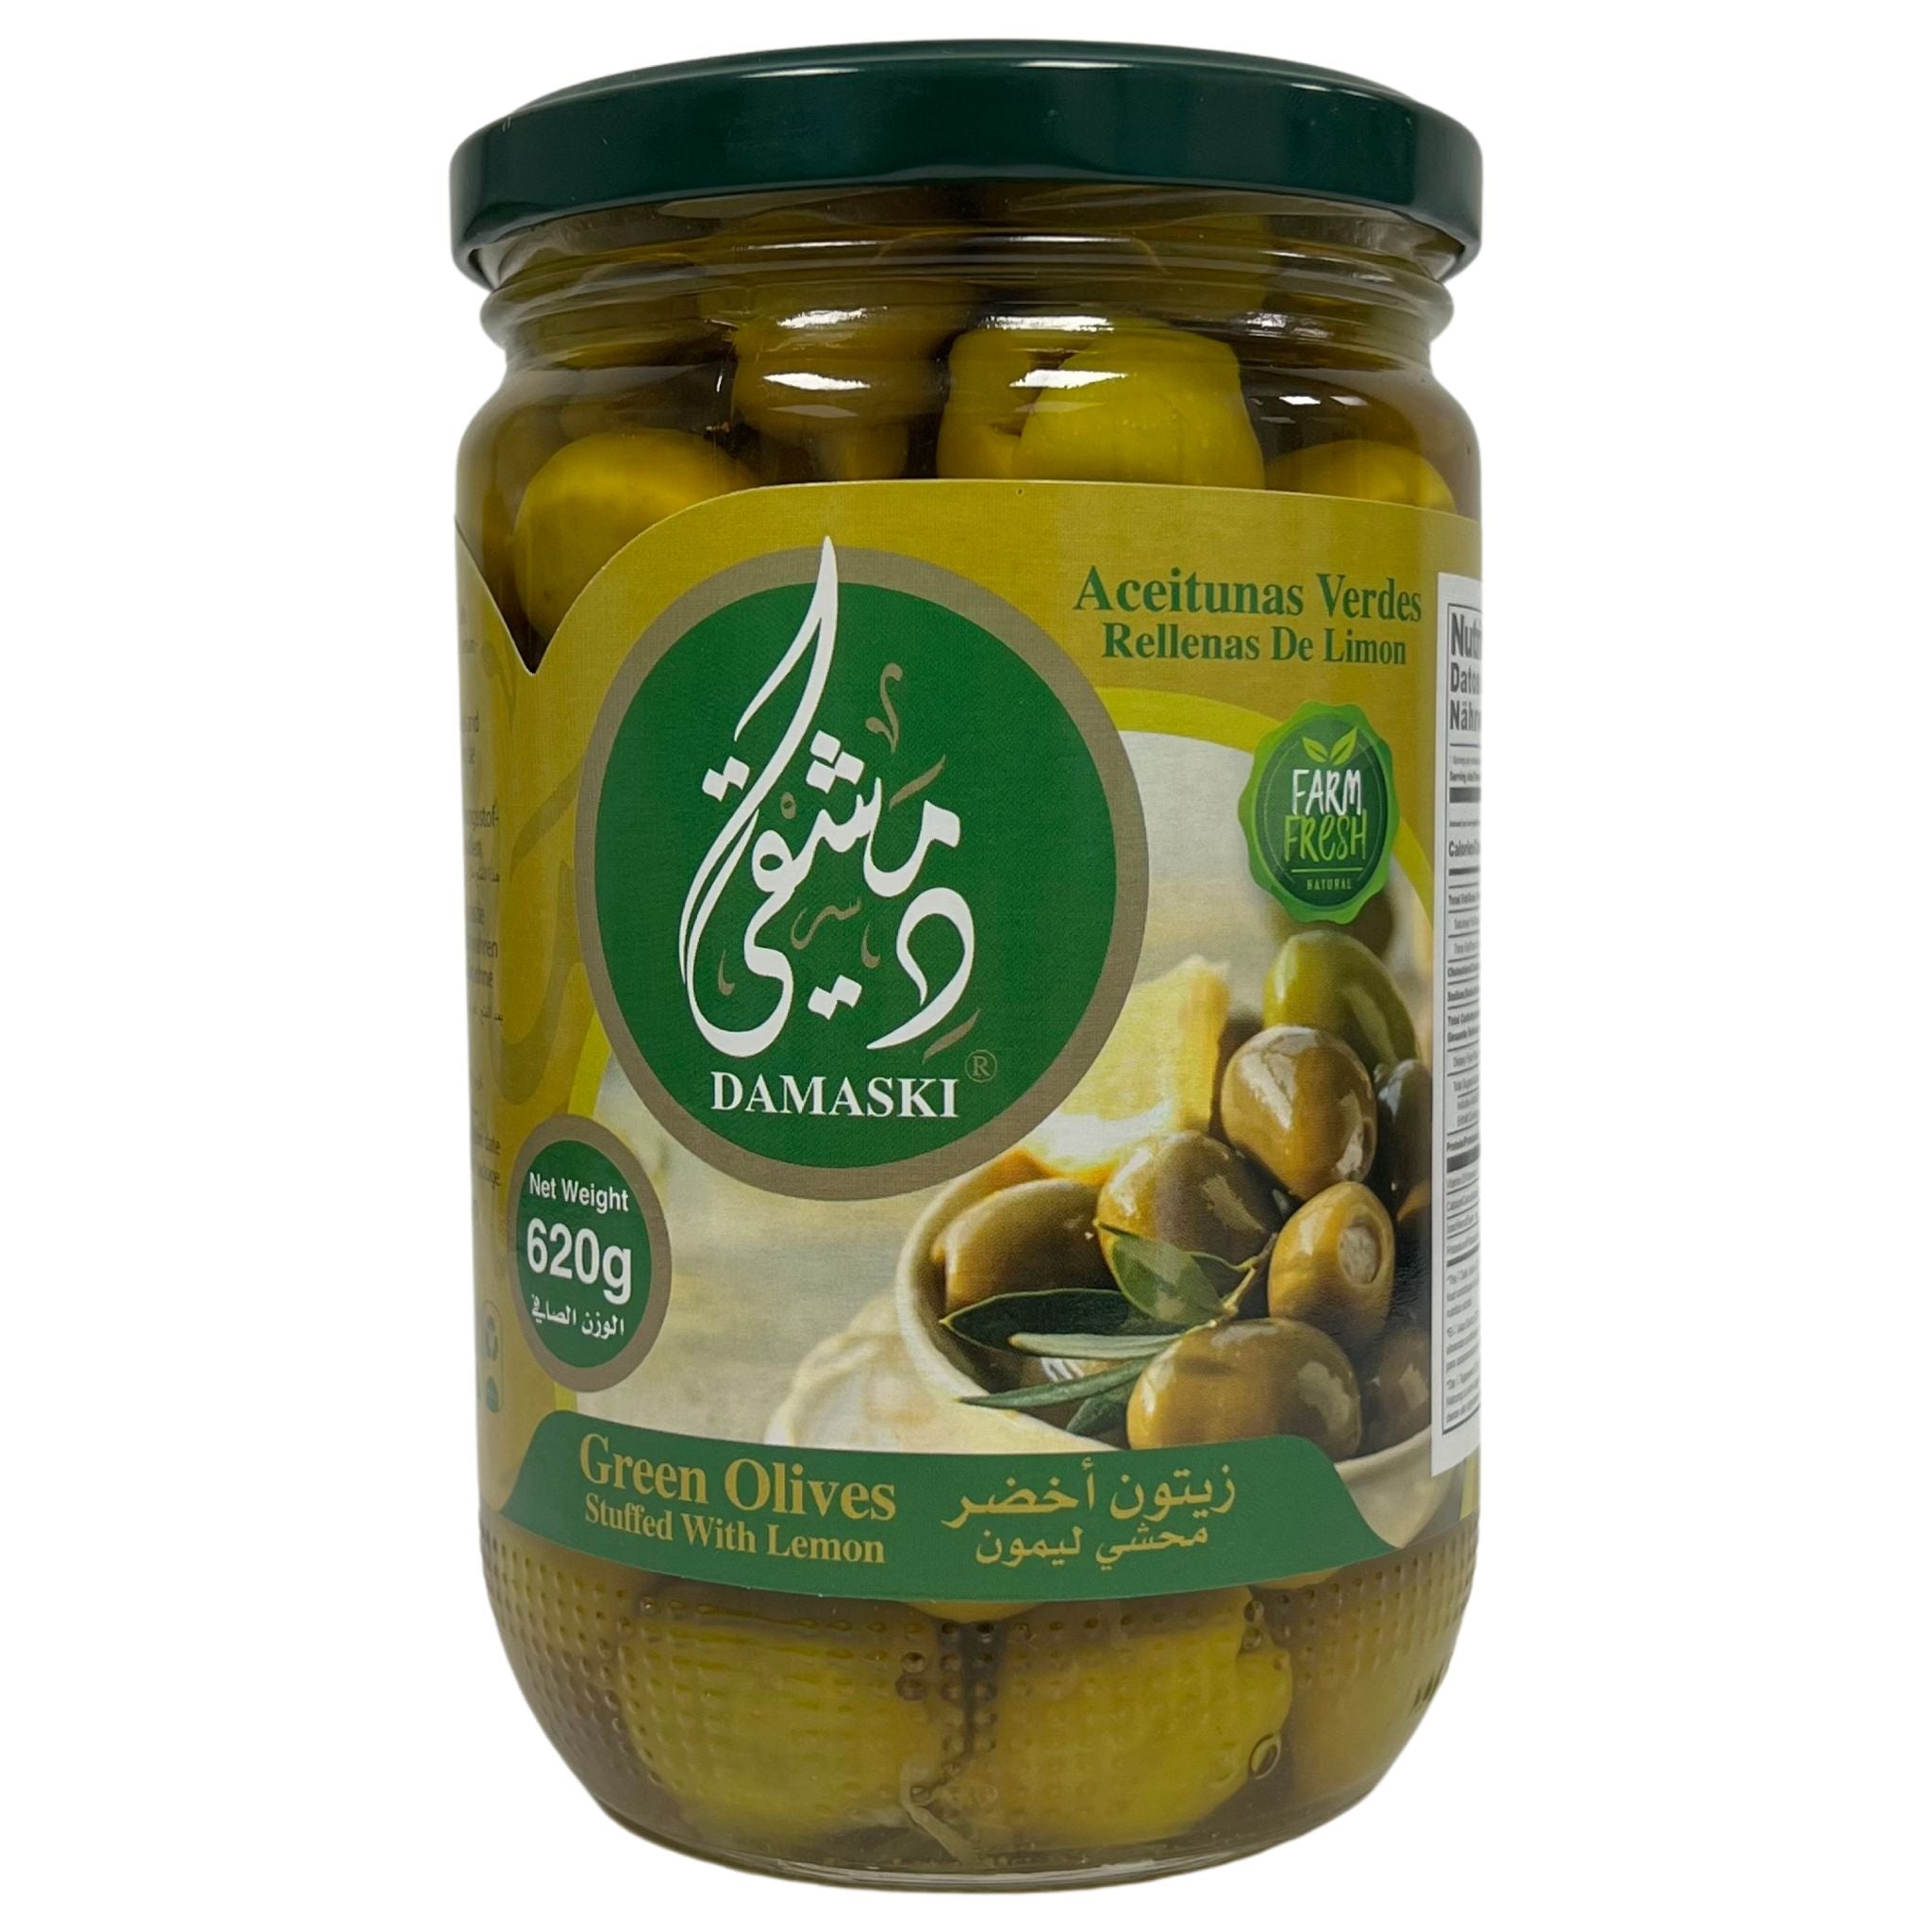 Damaski Green Olives Stuffed With Lemon 620g